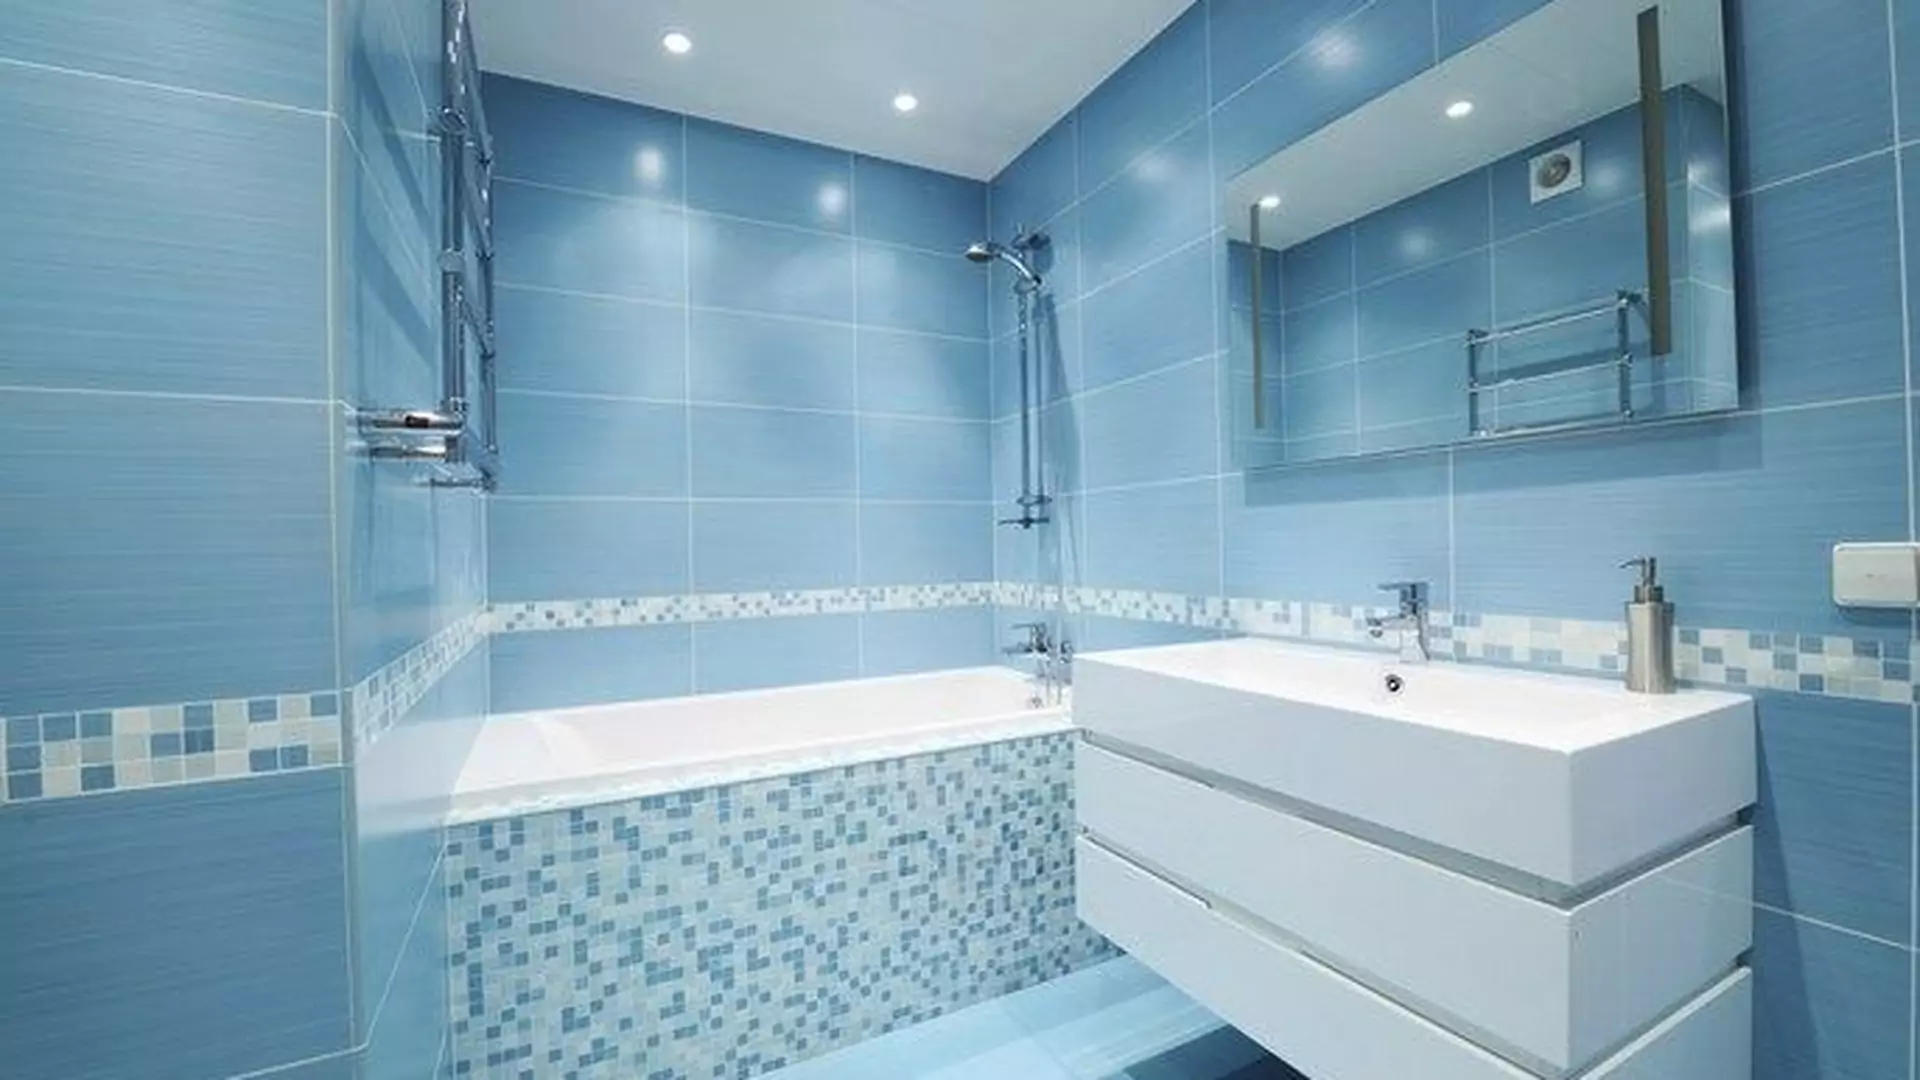 Niebieska łazienka - namiastka bezkresnej przestrzeni